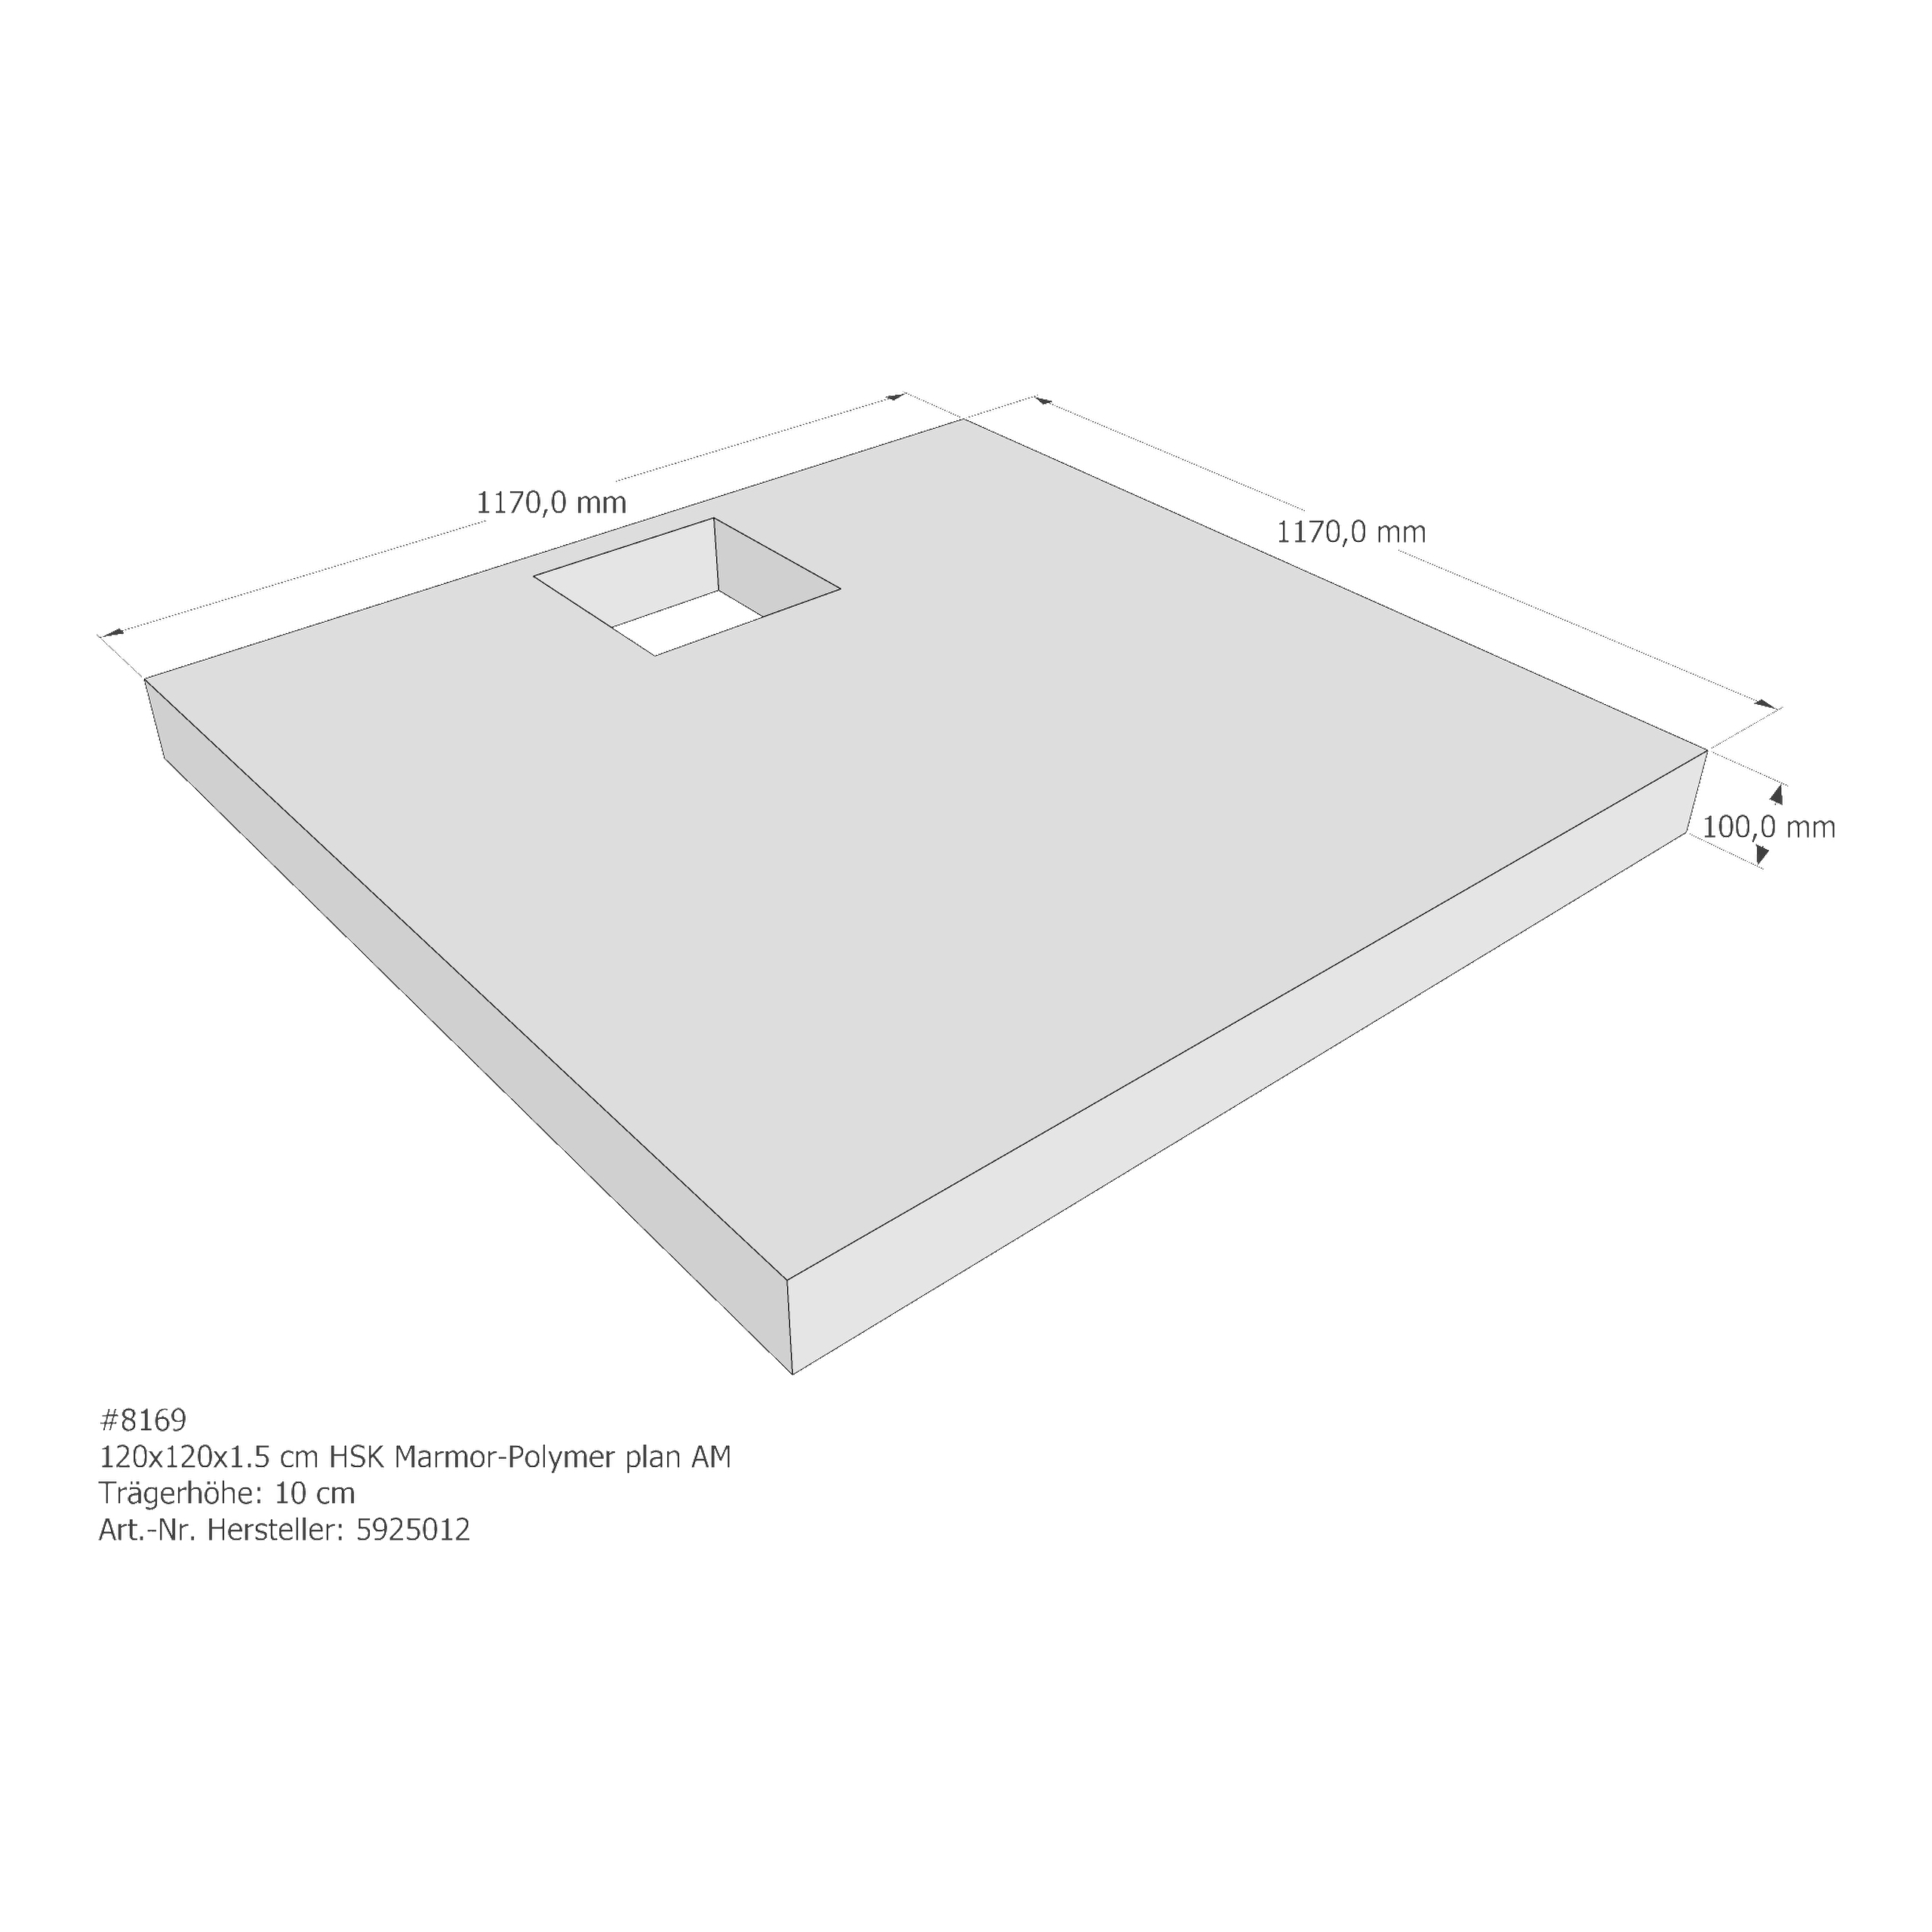 Duschwannenträger HSK Marmor-Polymer plan 120x120x1,5 cm AM